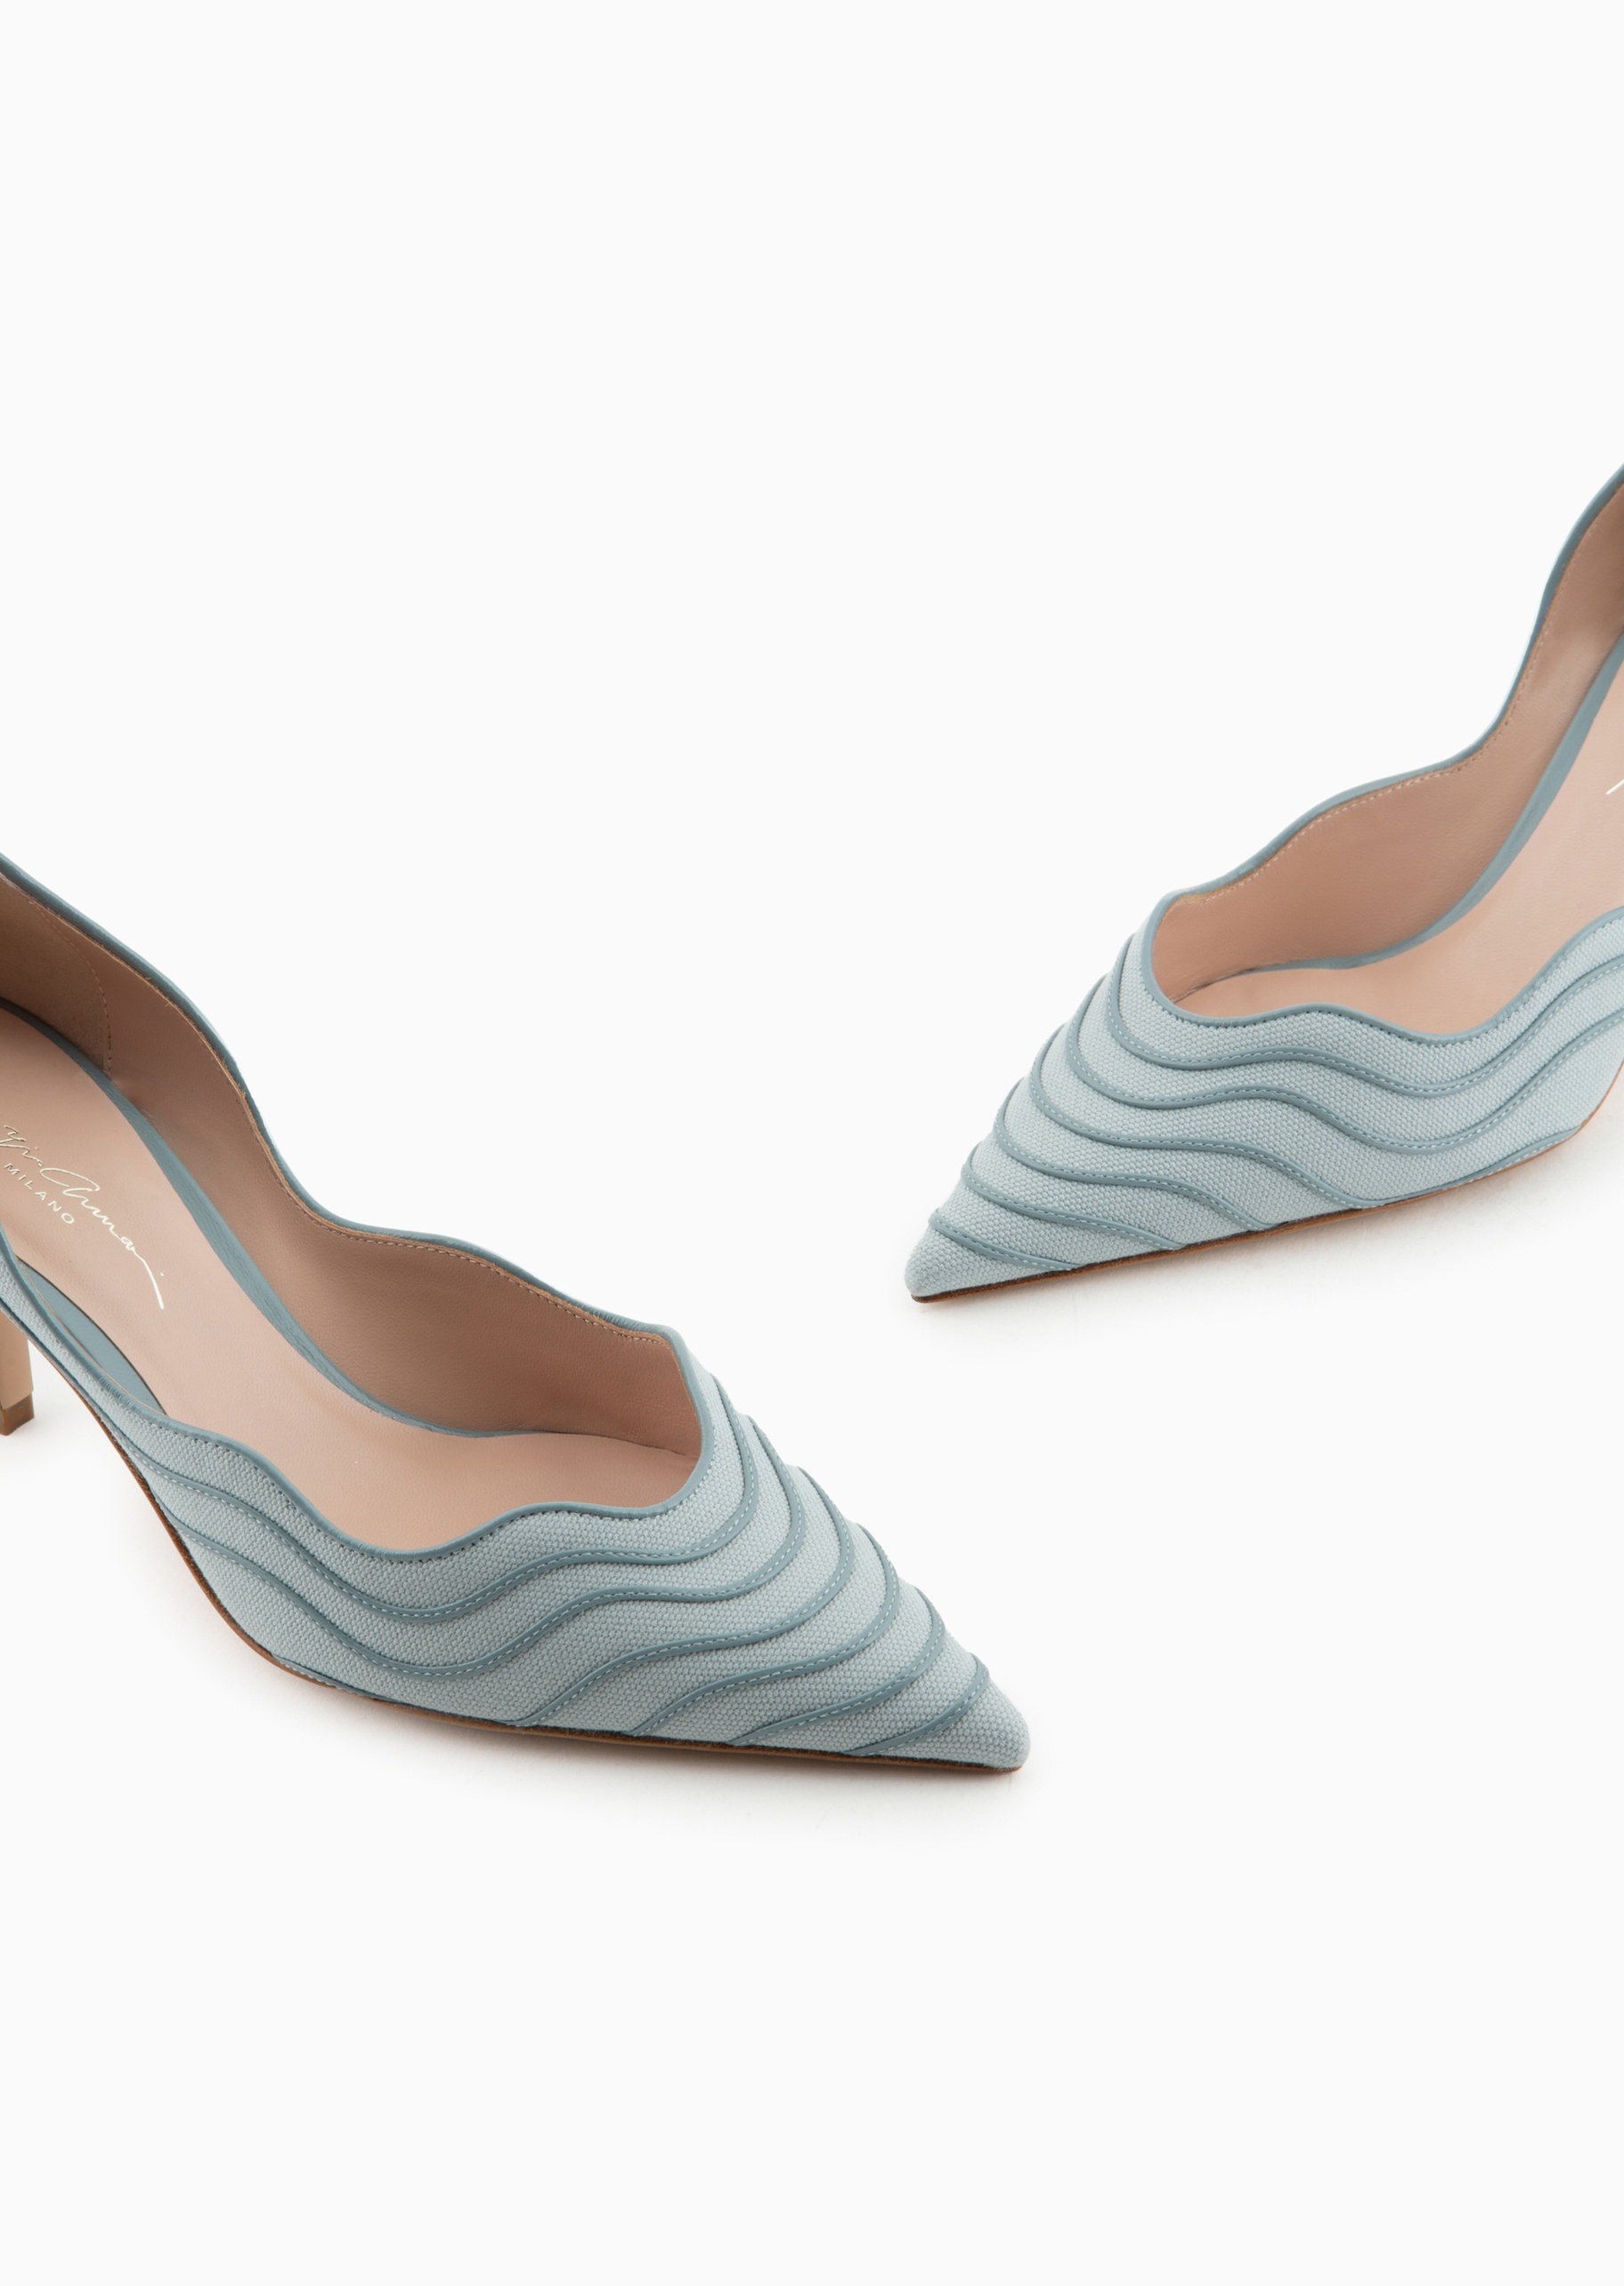 Giorgio Armani 女士全棉尖头高跟皮革波浪纹饰线浅口鞋